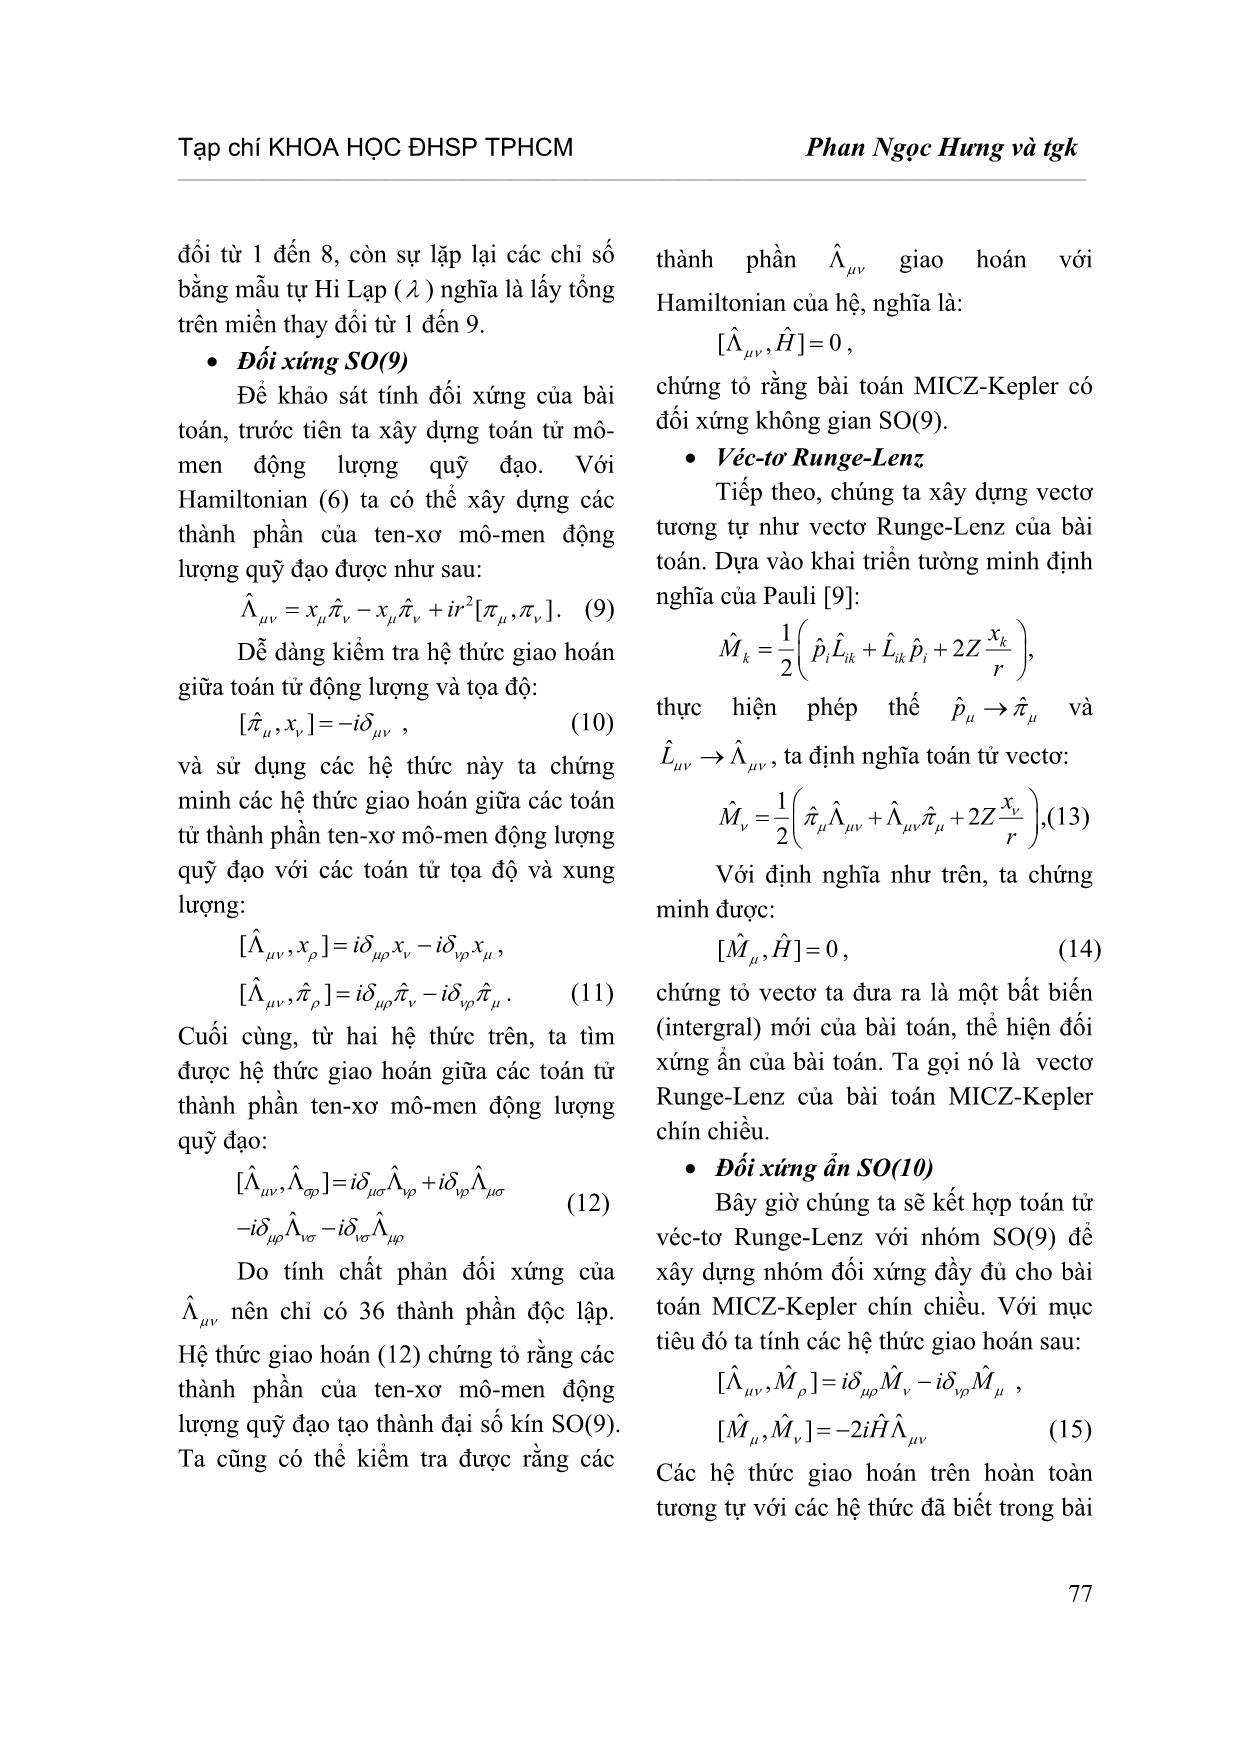 Đối xứng ẩn của bài toán Micz-Kepler chín chiều trang 4